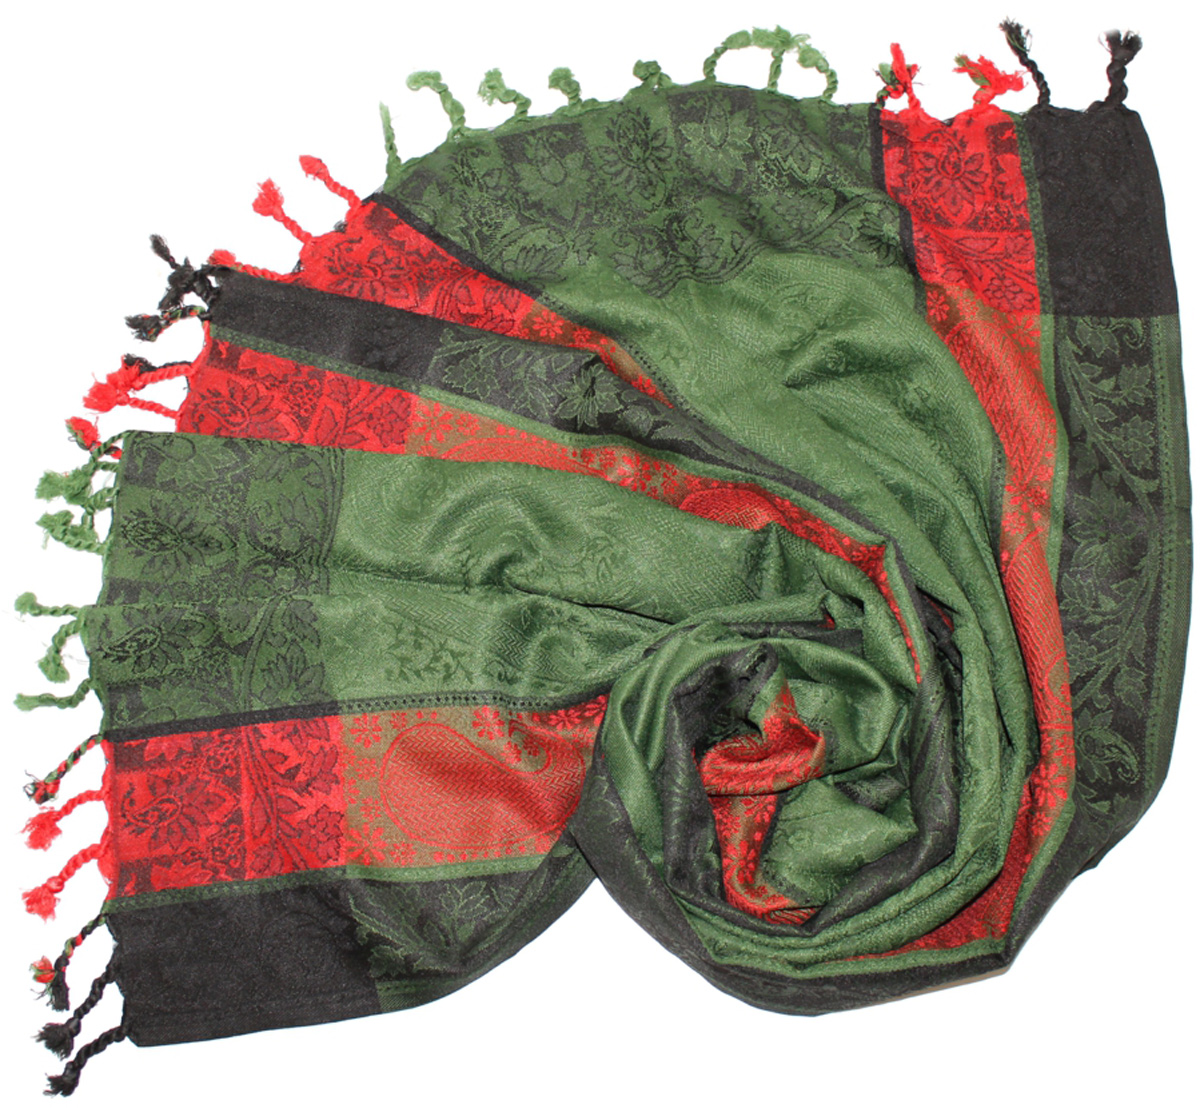 Палантин Ethnica, цвет: зеленый, красный. 661075н. Размер 70 см х 180 см